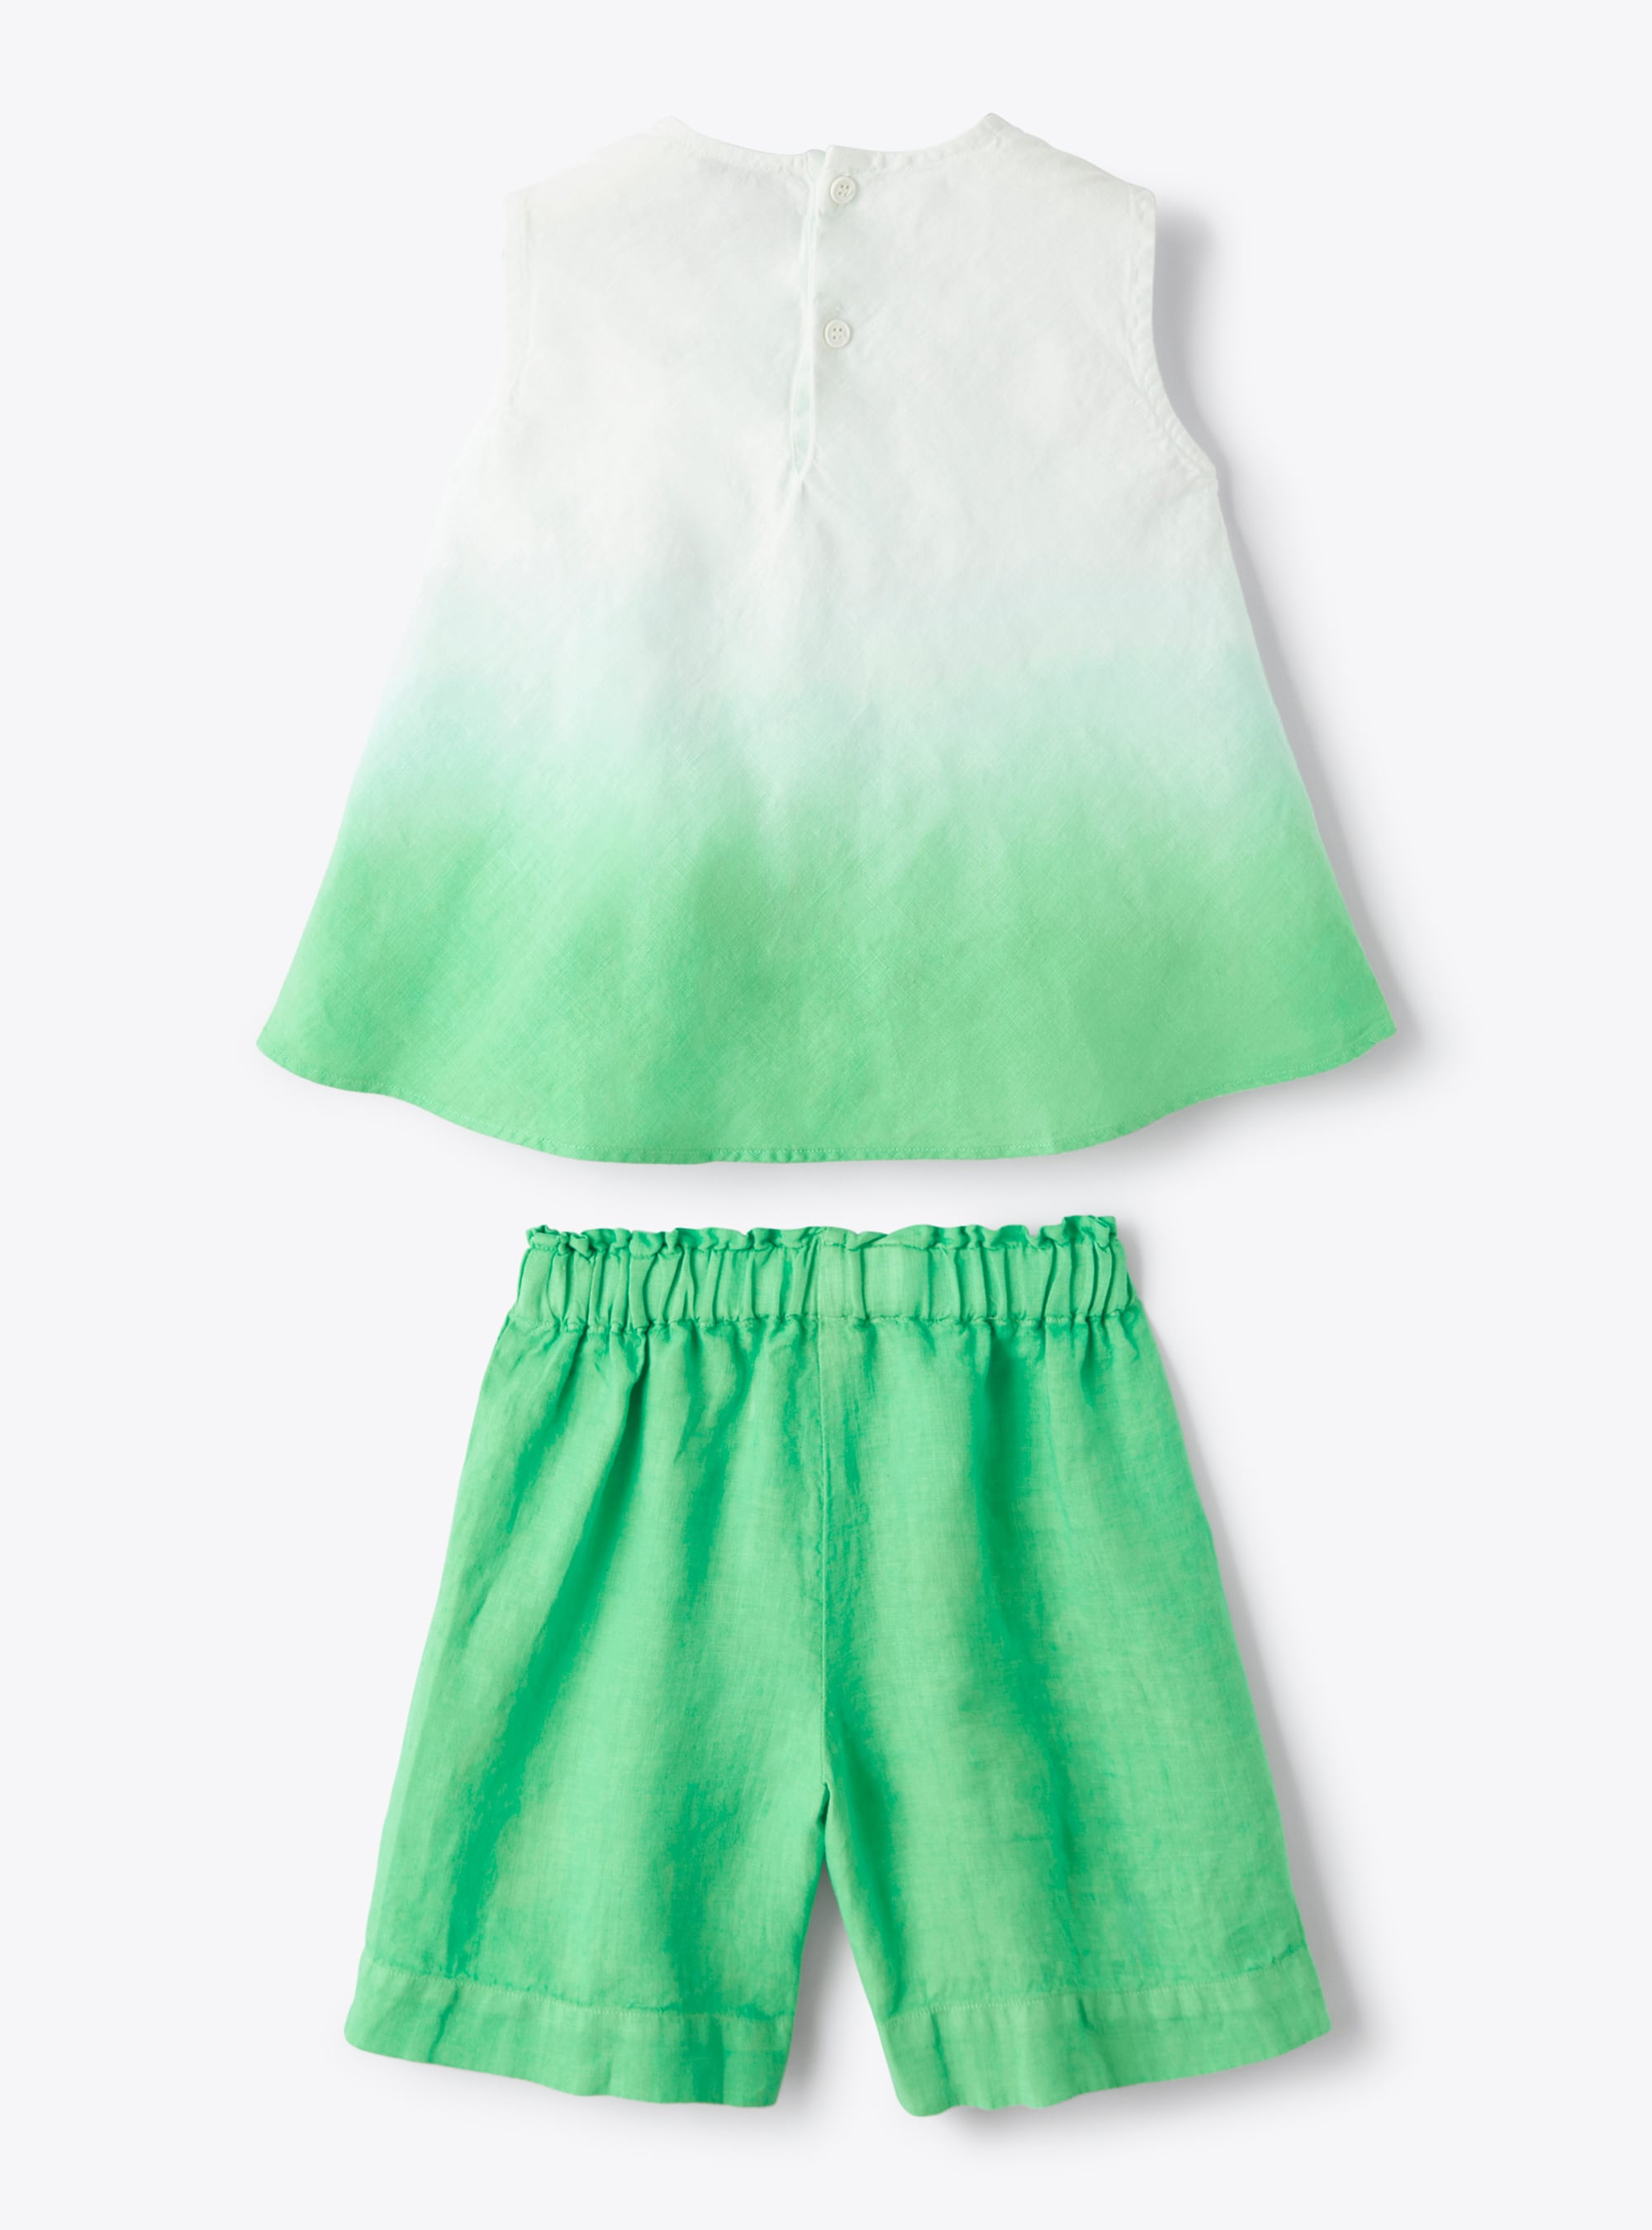 Zweiteiliges Set aus Leinen mit limegrün nuancierter Färbung - Grün | Il Gufo